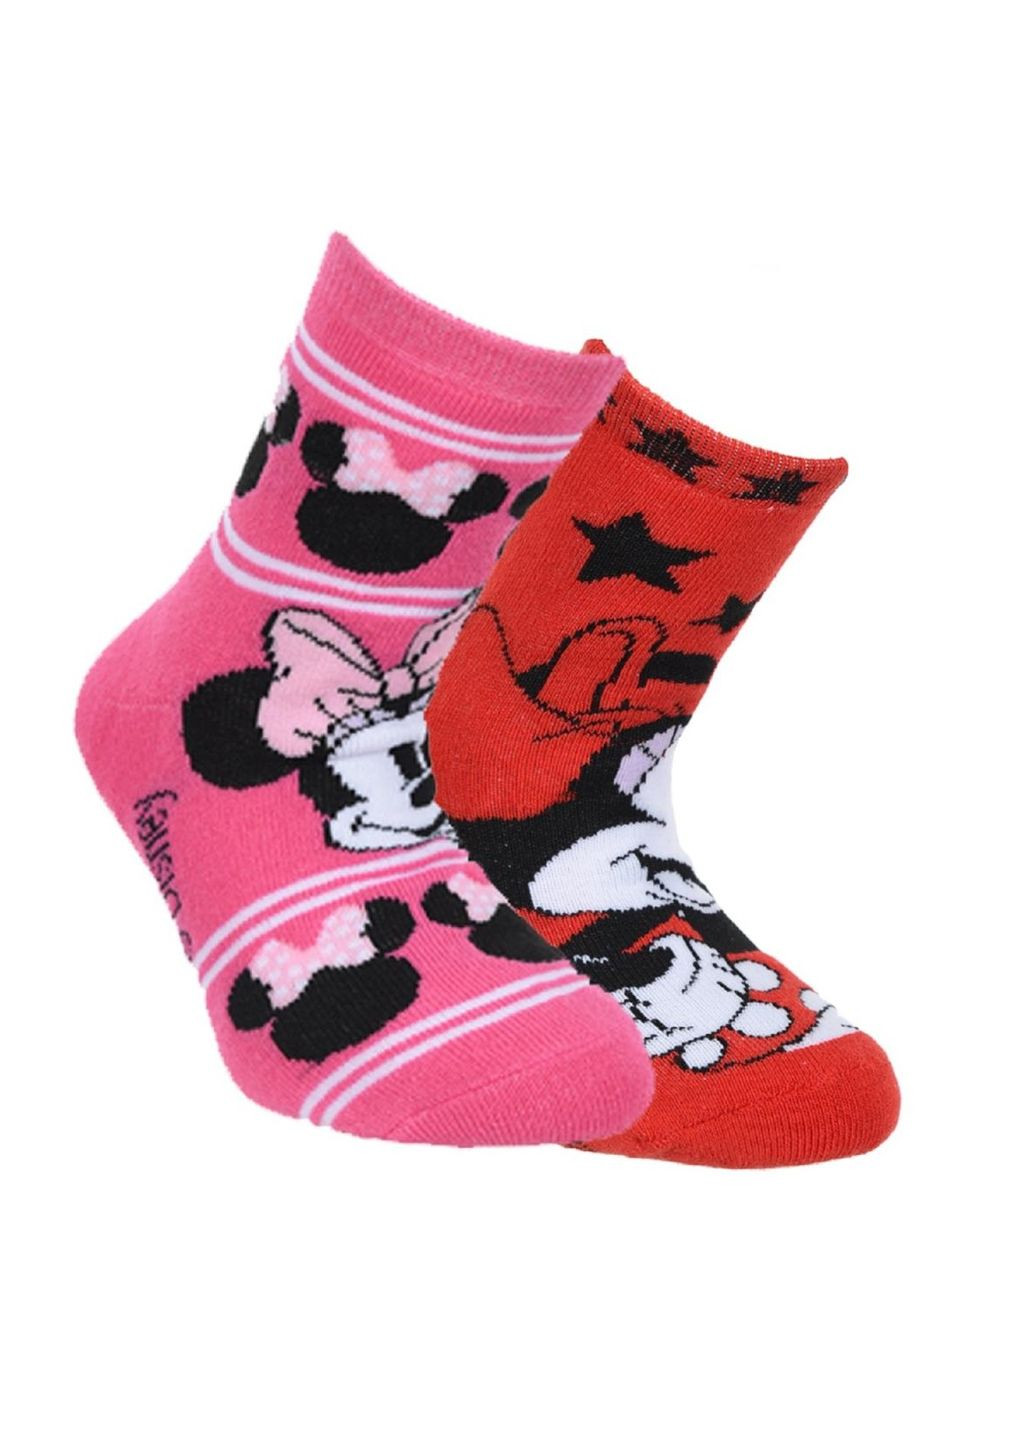 Шкарпетки махрові 2 пари Minnie Mouse (Мінні Маус) HS06251 Disney шкарпетки 2 шт. (292253178)